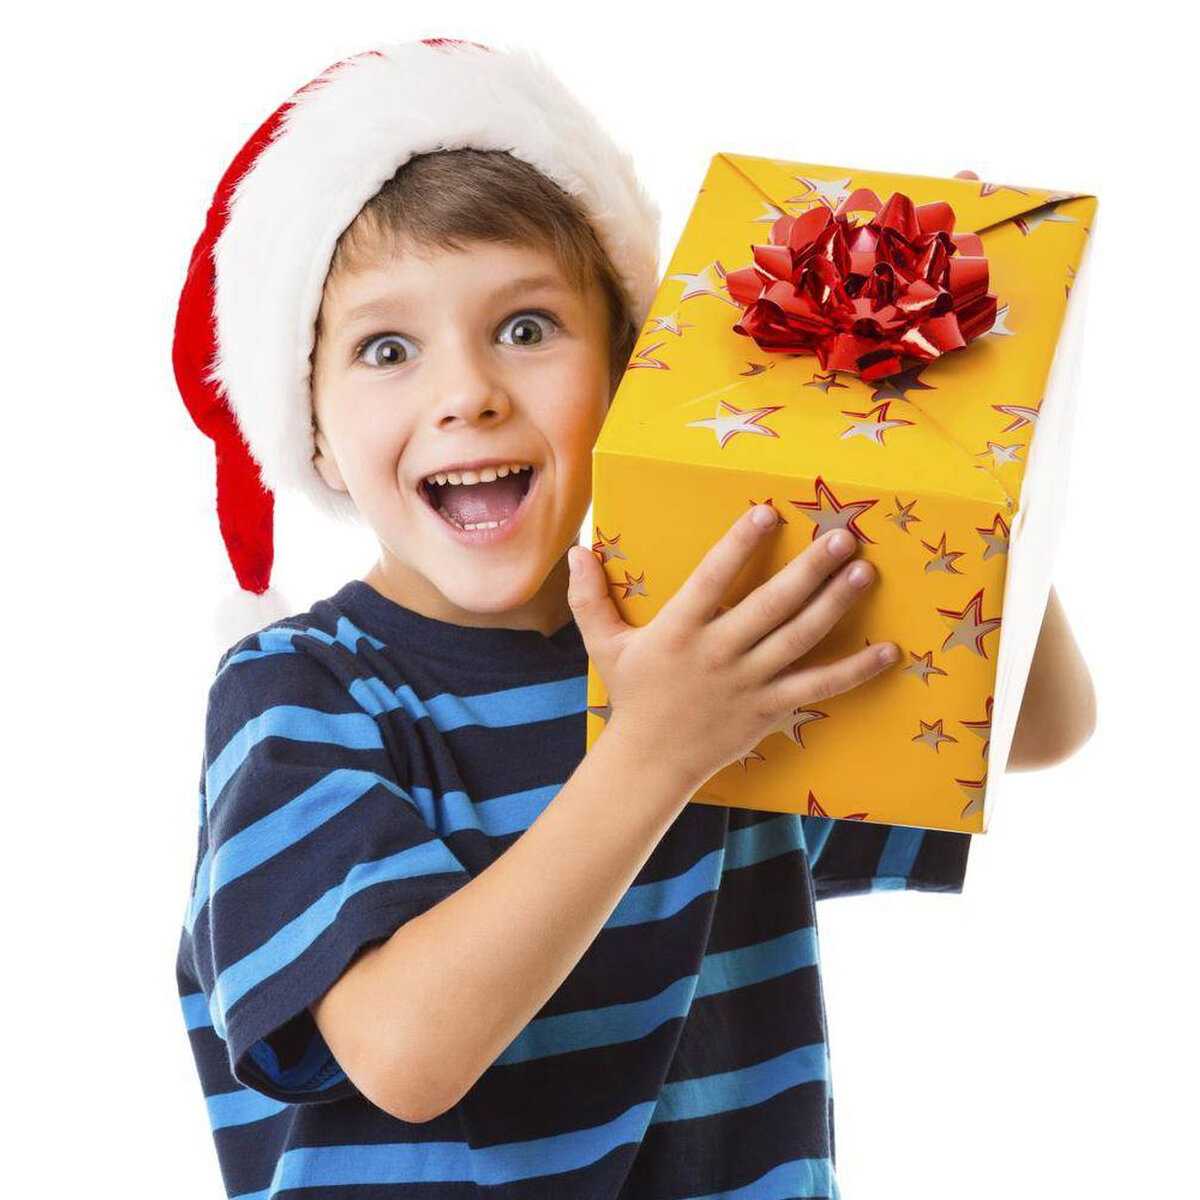 Недорогие подарки для детей на новый год | финтолк